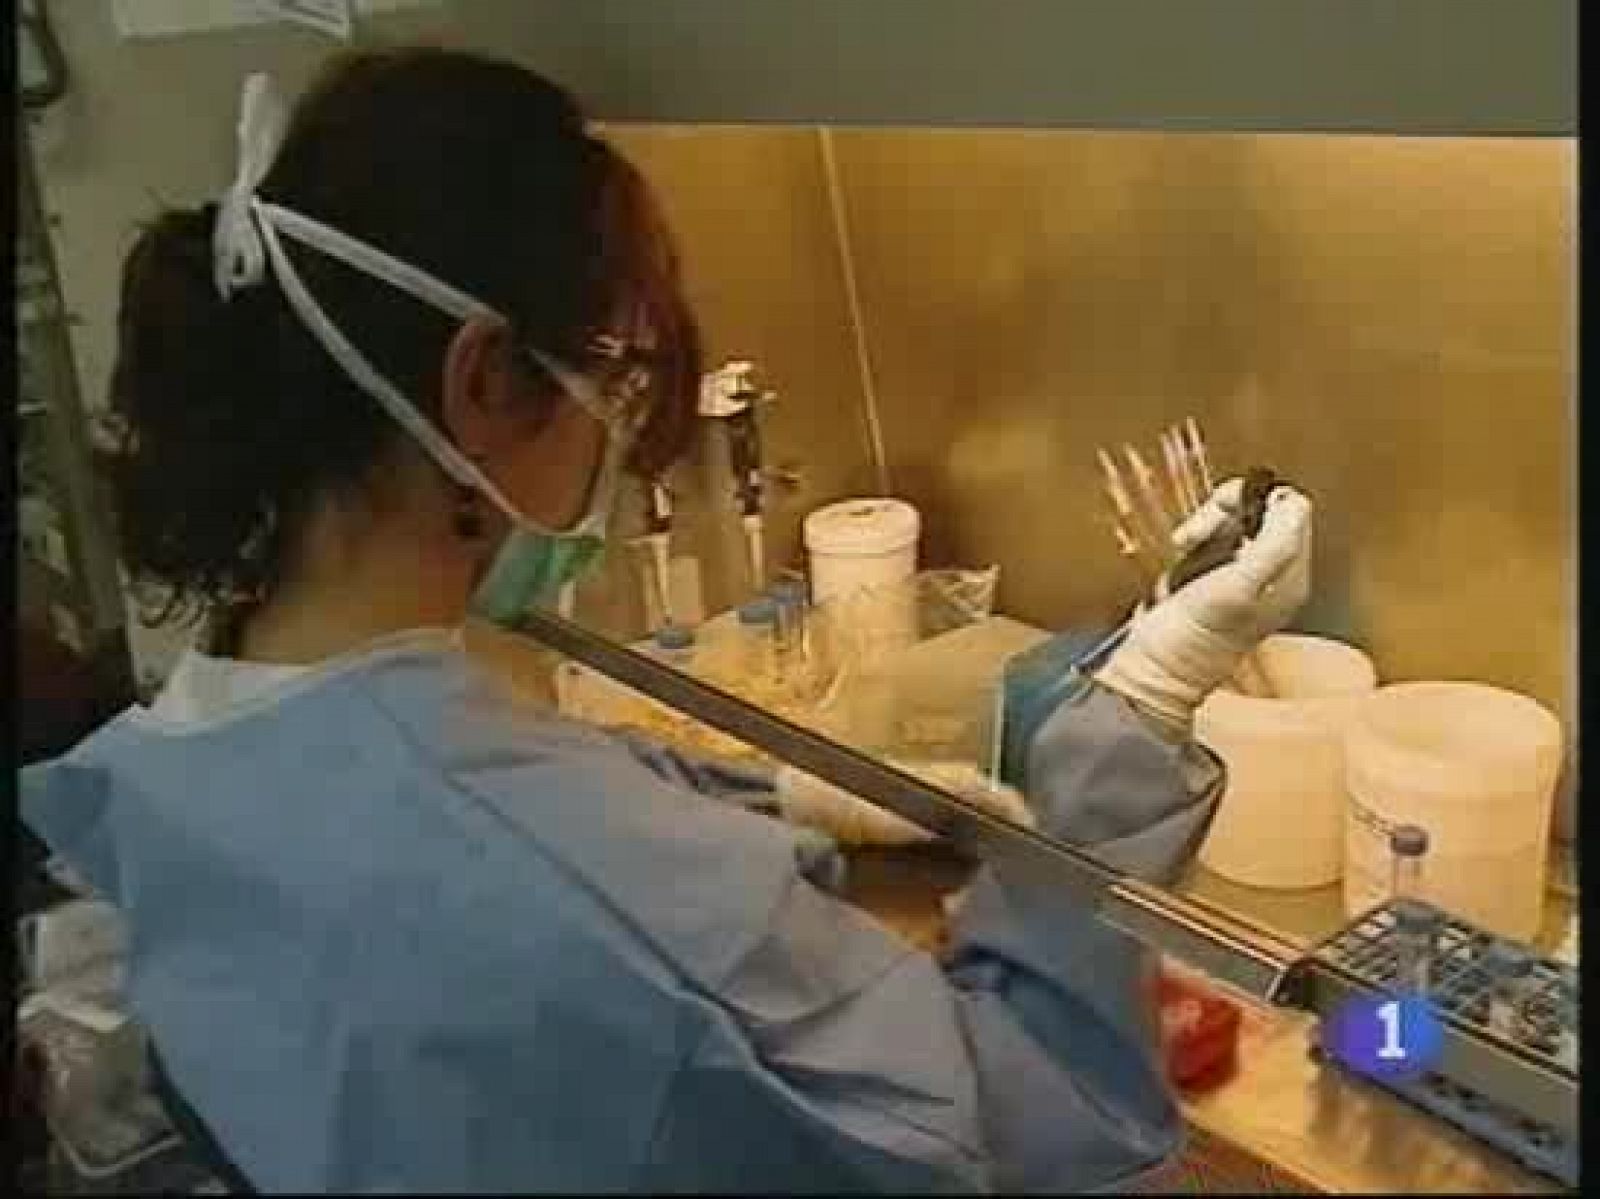 Científicos del hospital de Can Ruti de Badalona han identificado una forma de infección del SIDA hasta ahora desconocida